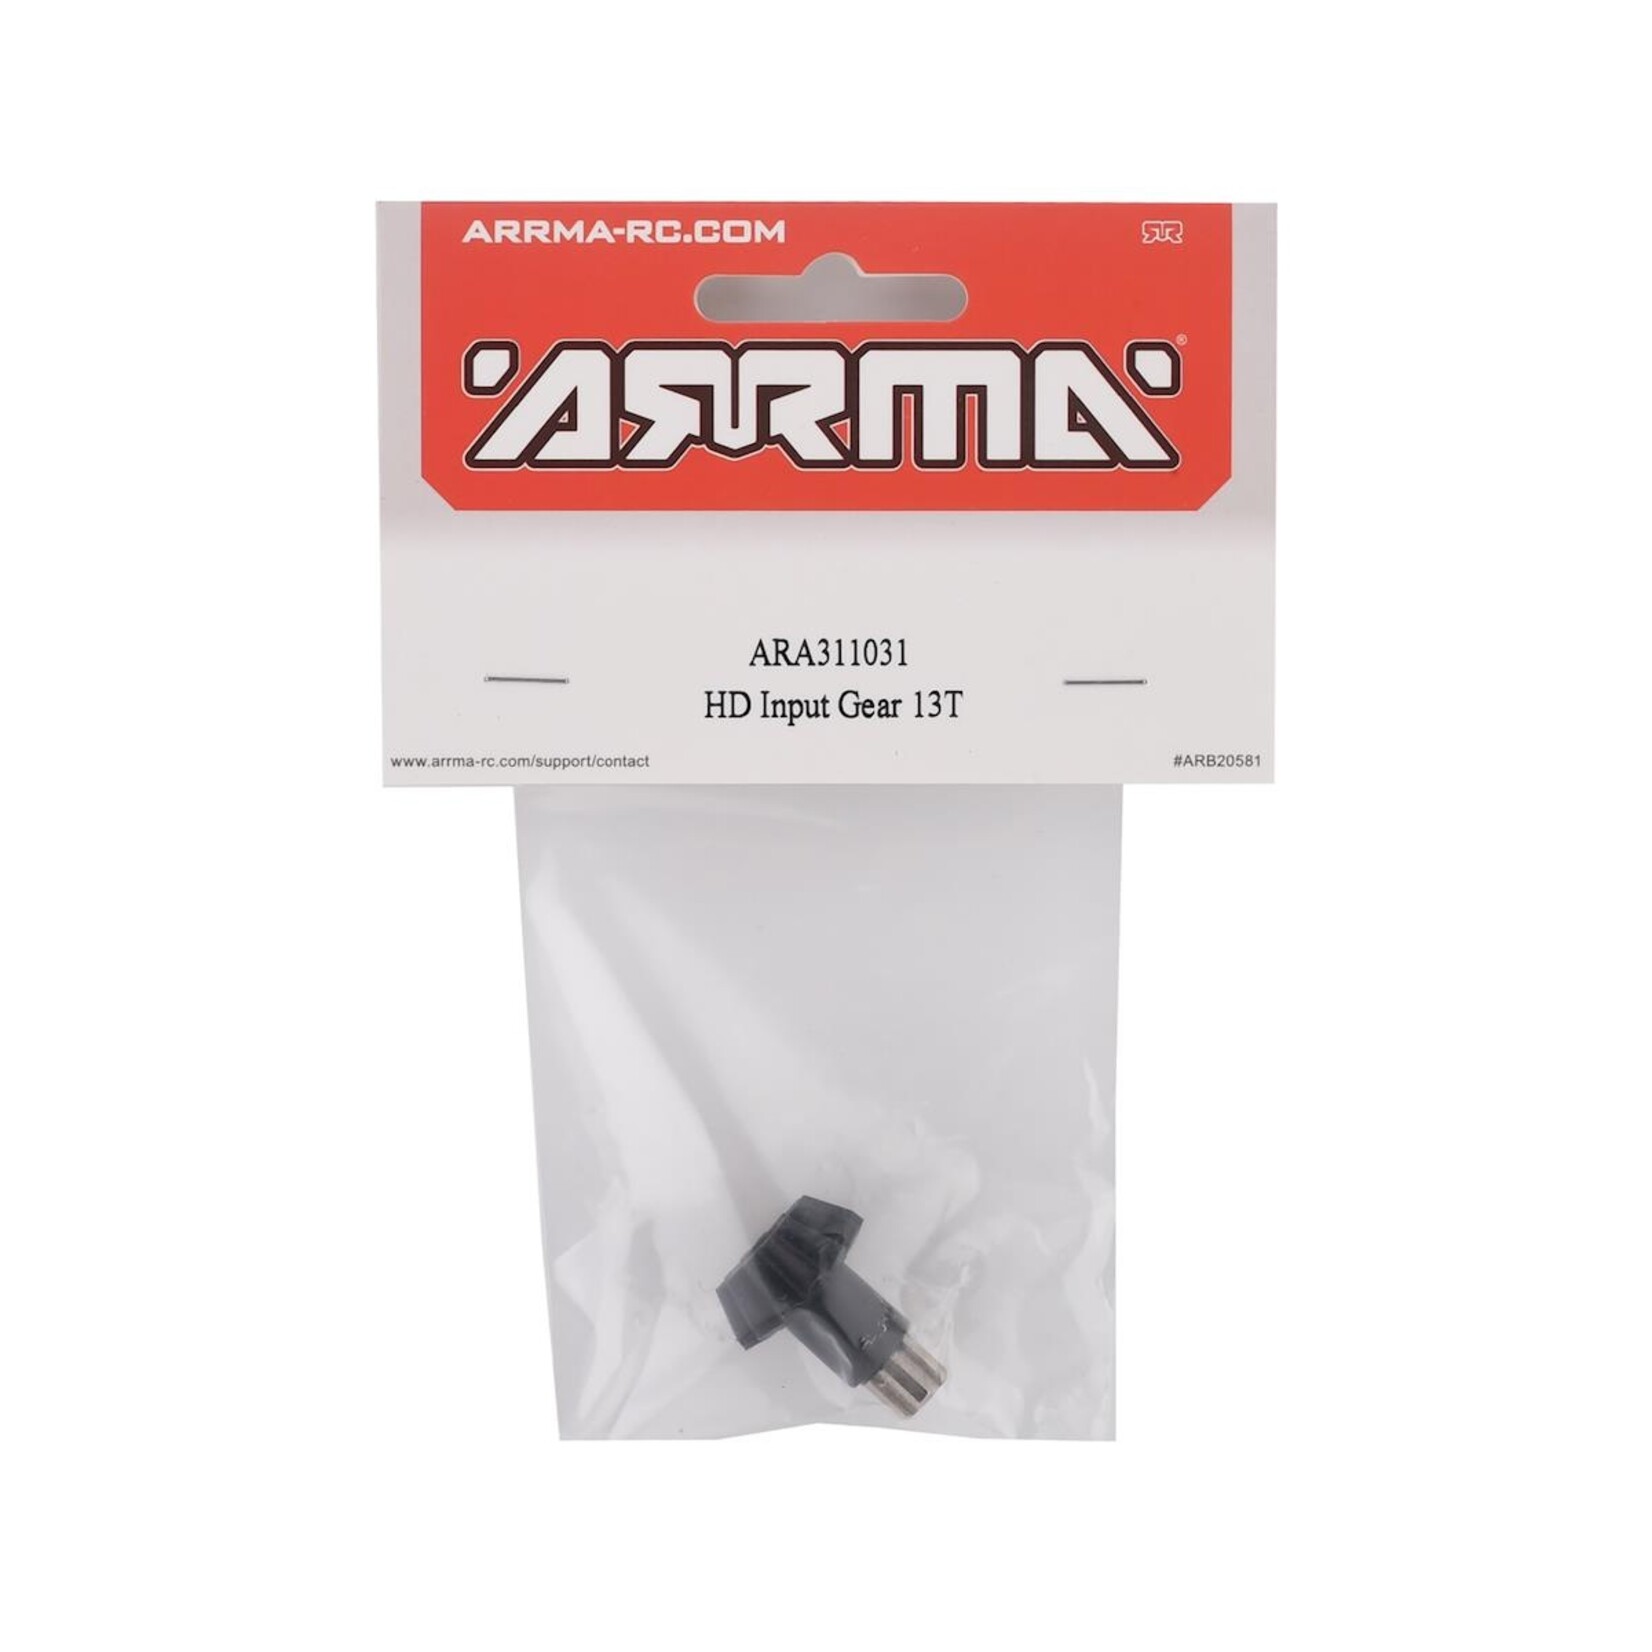 ARRMA Arrma BLX 4X4 HD Input Gear (13T) #ARA311031